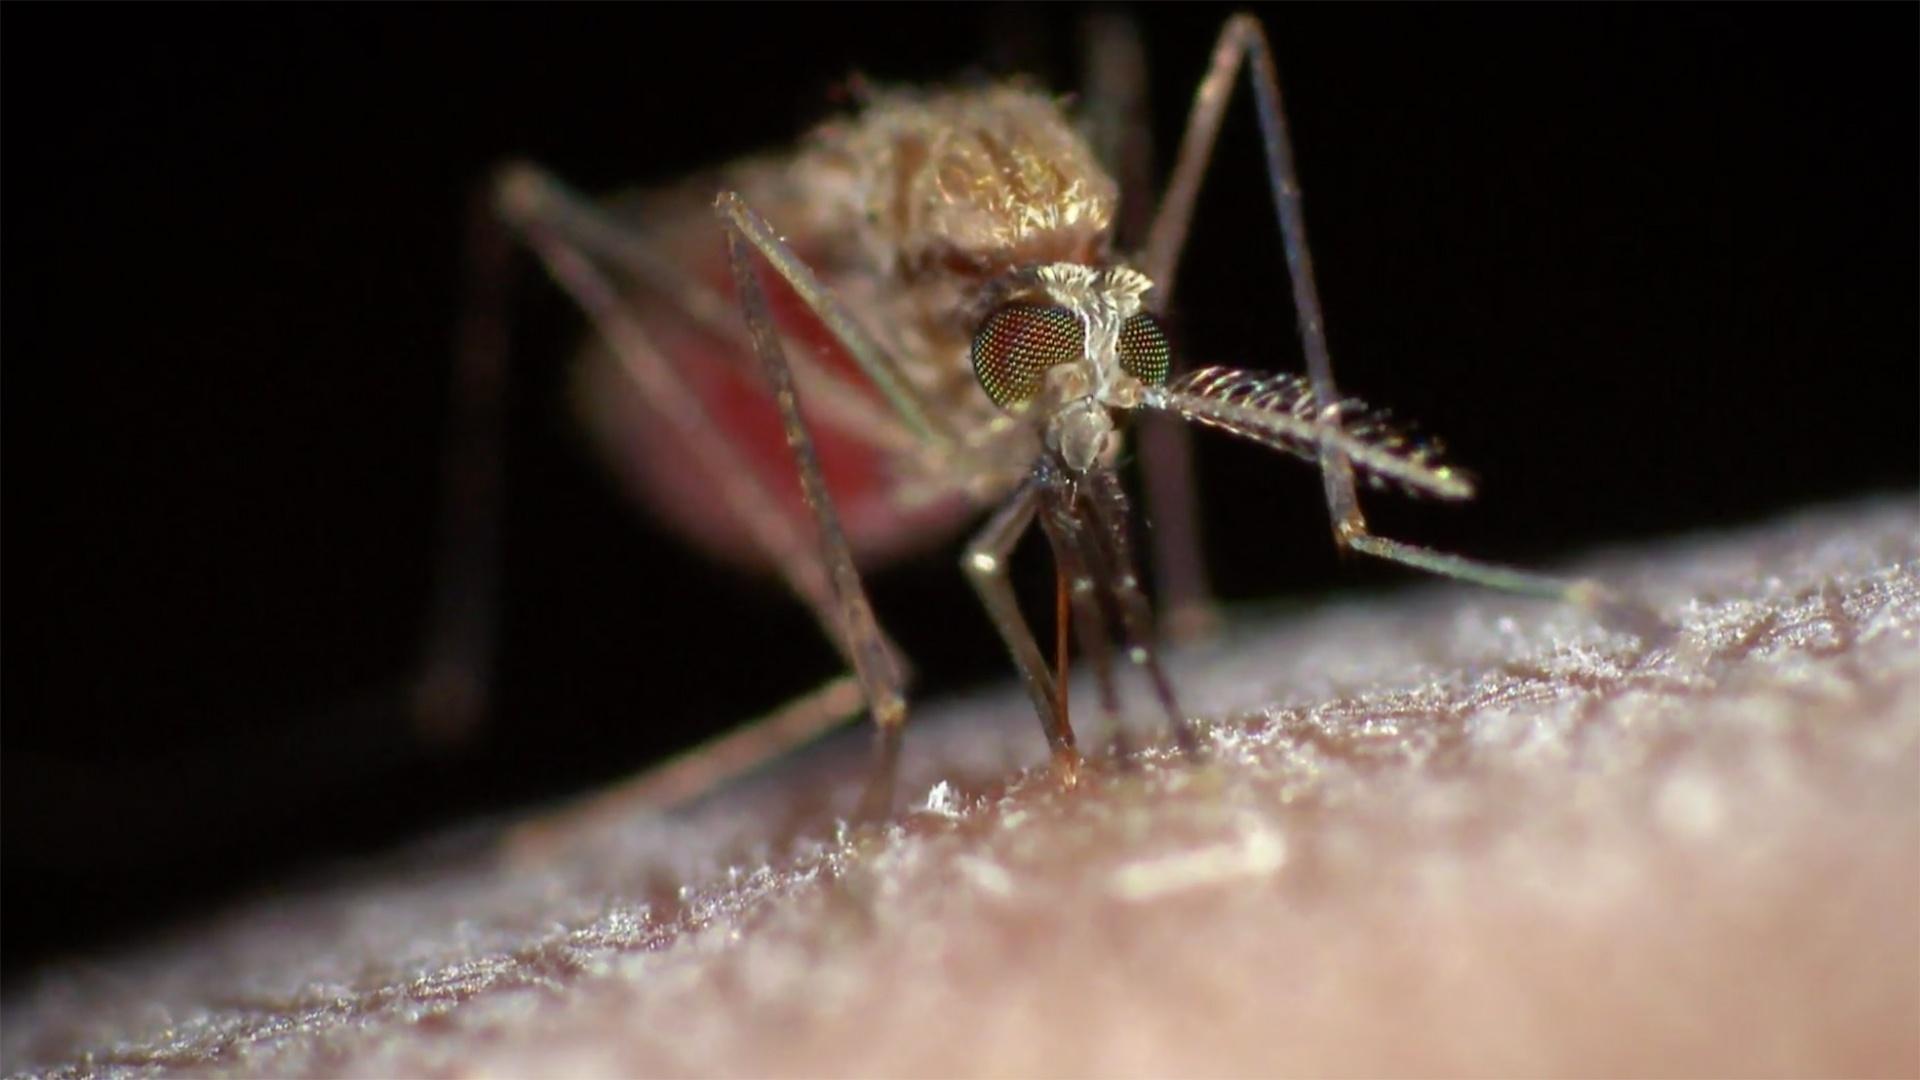 Zika, Ebola & Beyond